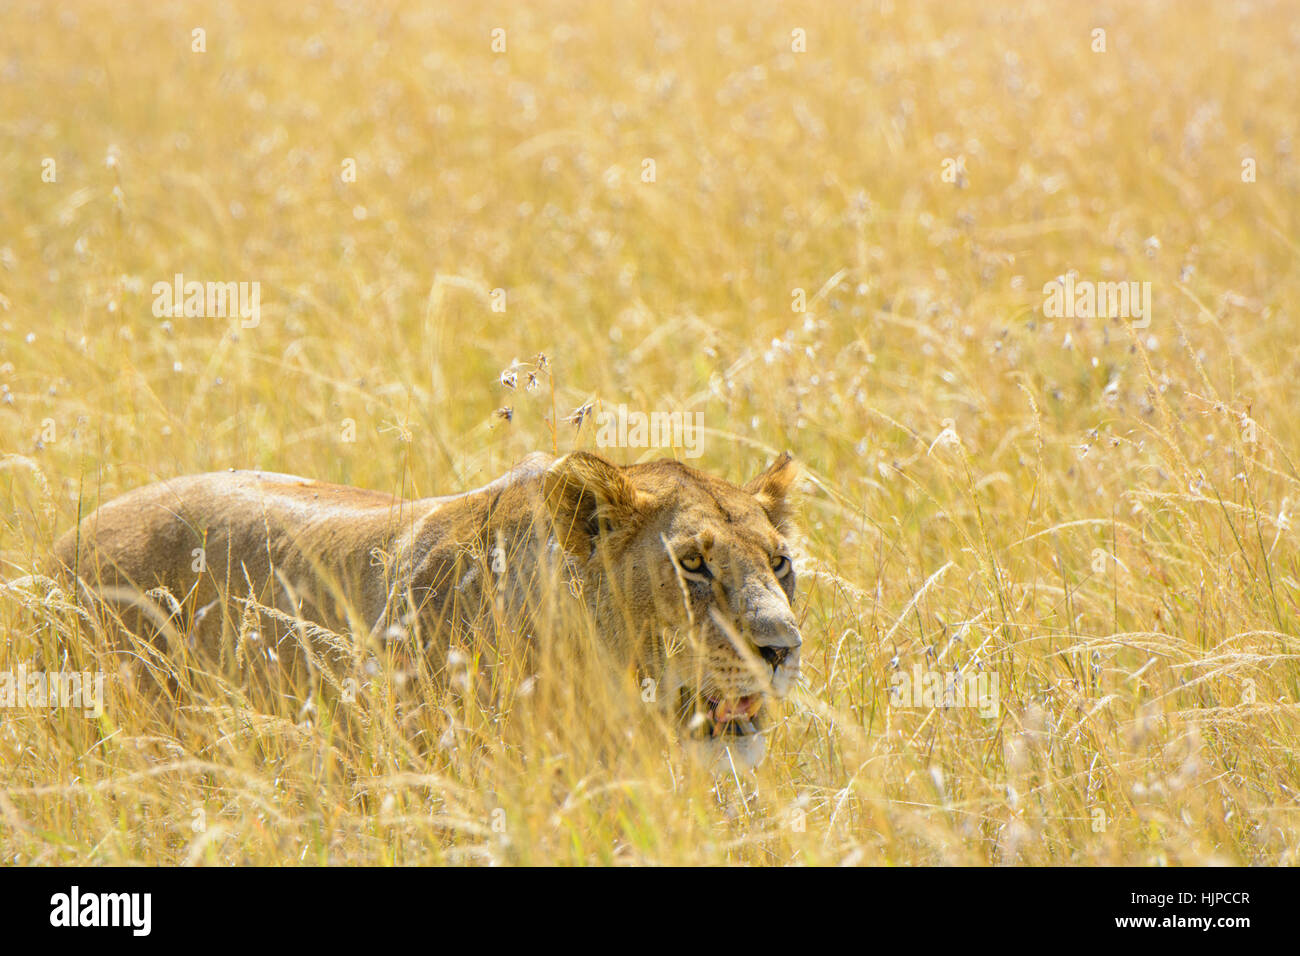 Adulto selvatica Leonessa africana, Panthera leo, stalking preda mimetizzata in erba lunga, il Masai Mara, Kenya, Africa, Leonessa il comportamento di caccia Foto Stock